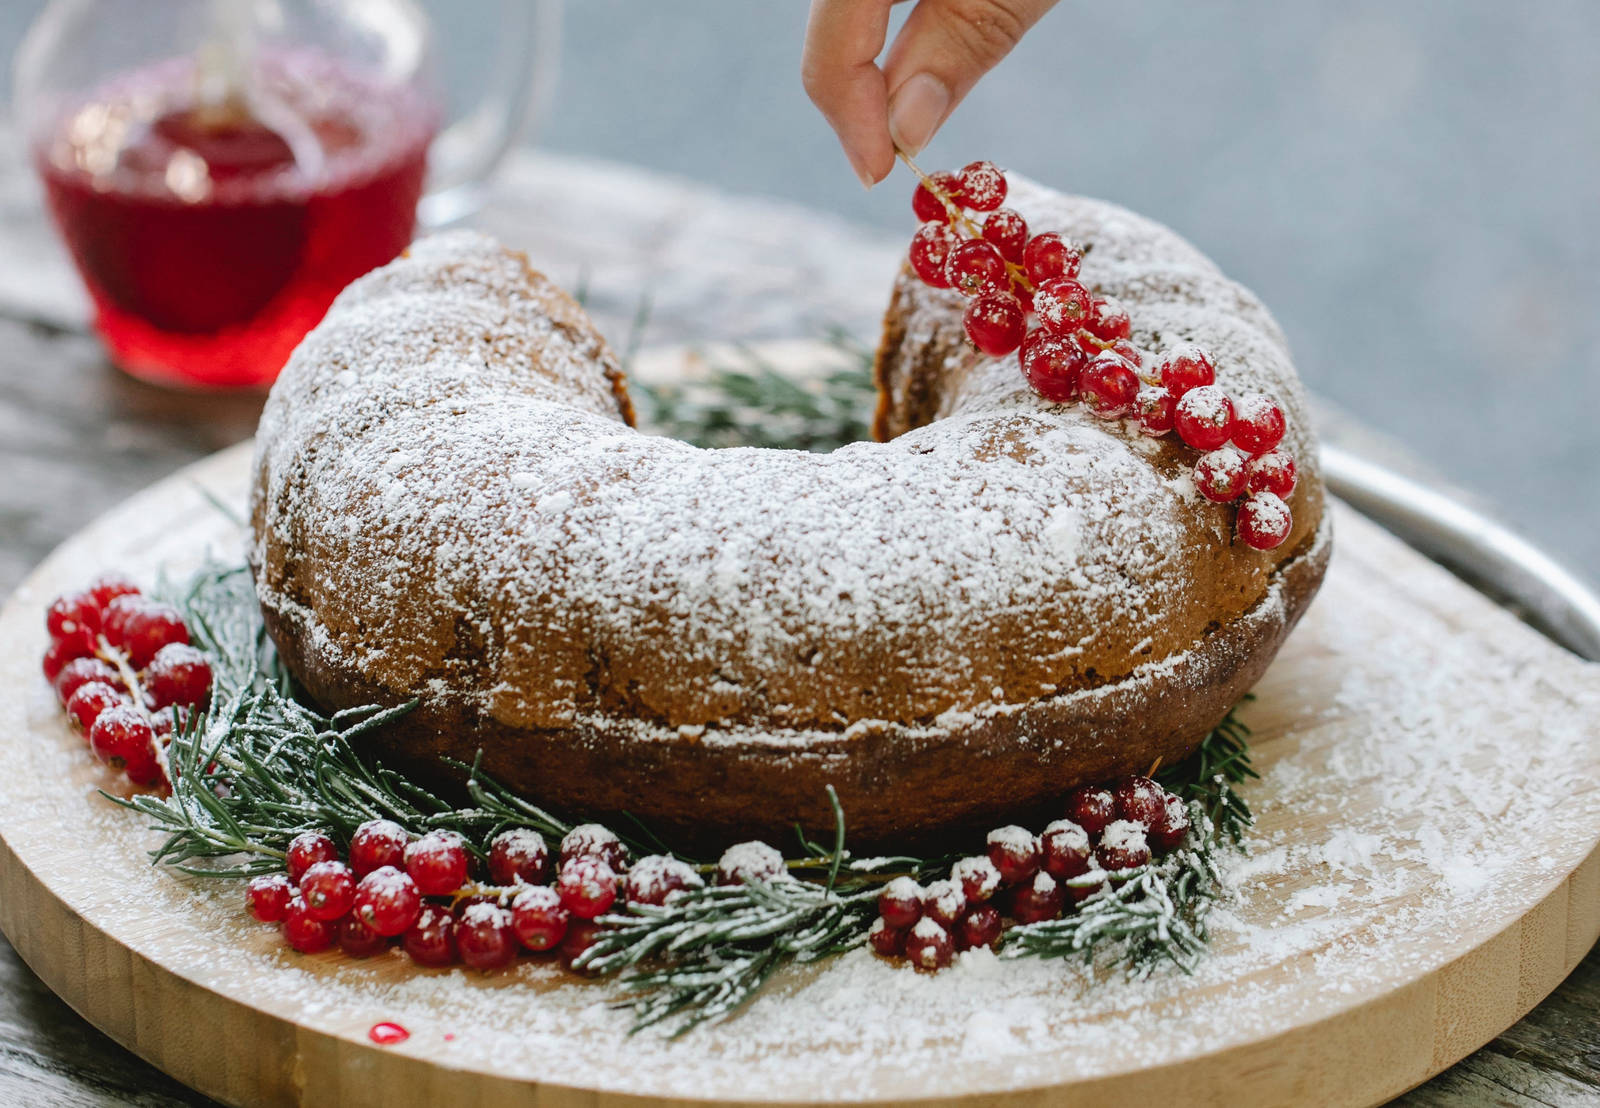 Réinventez Noël : Des desserts traditionnels transformés avec brio !